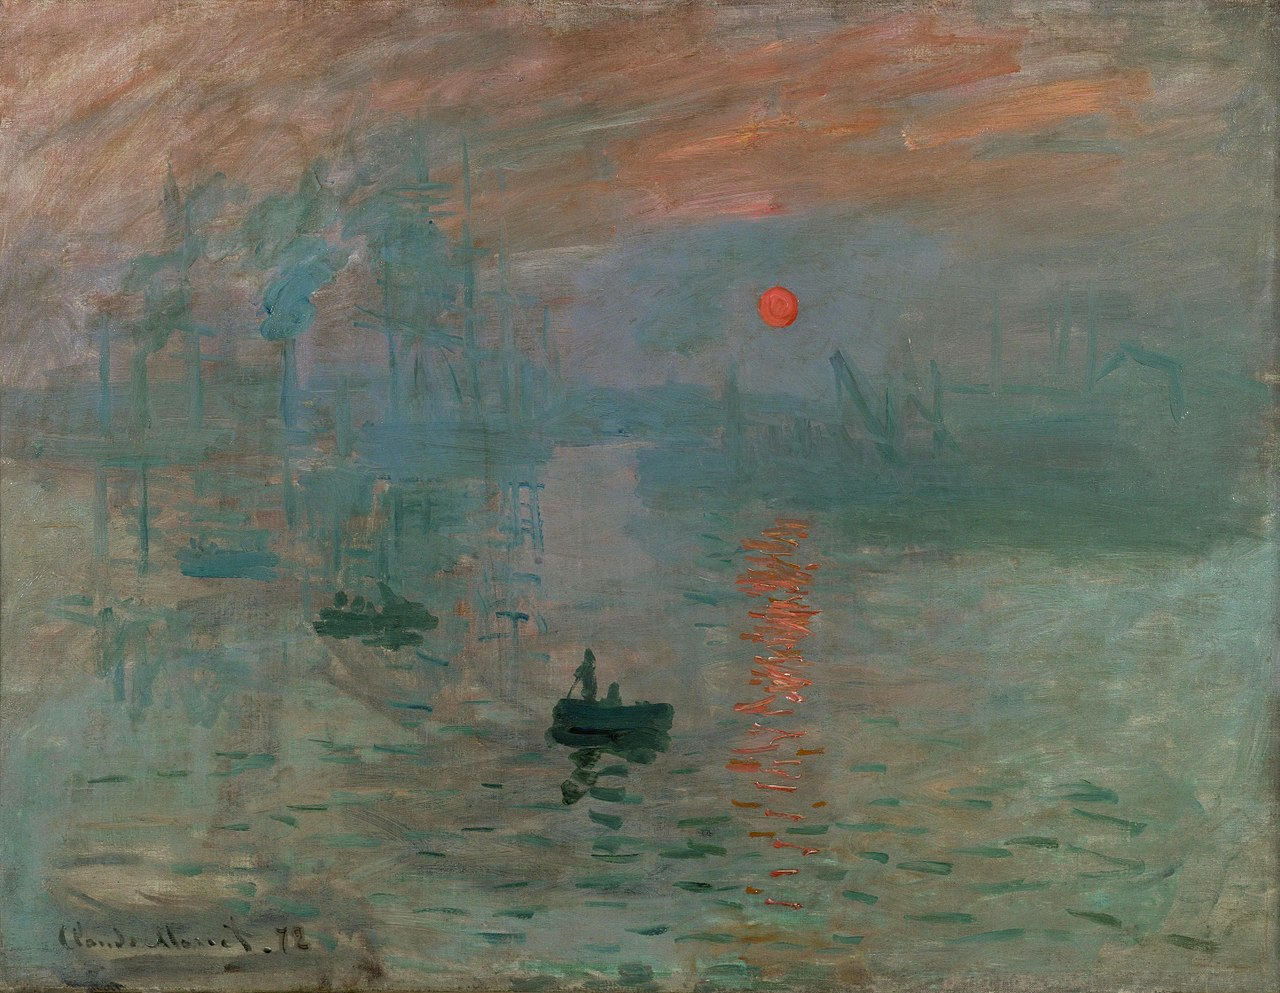 Claude Monet’s “Impression, Sunrise” 